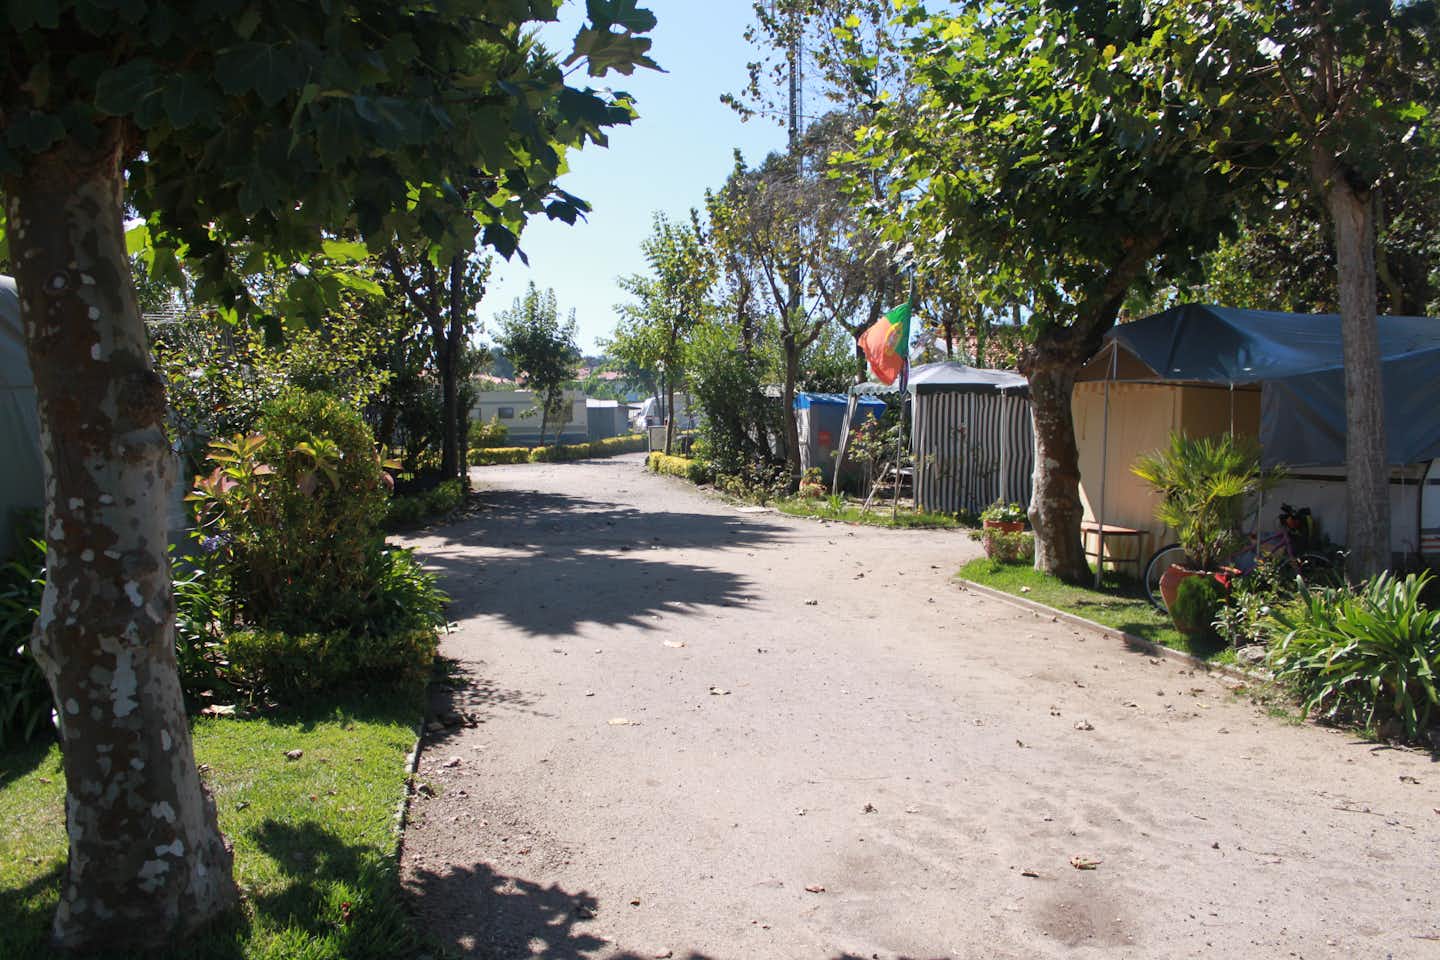 Parque de Campismo de Vila Chã  - Gehweg entlang der Stellplätze zwischen Bäumen